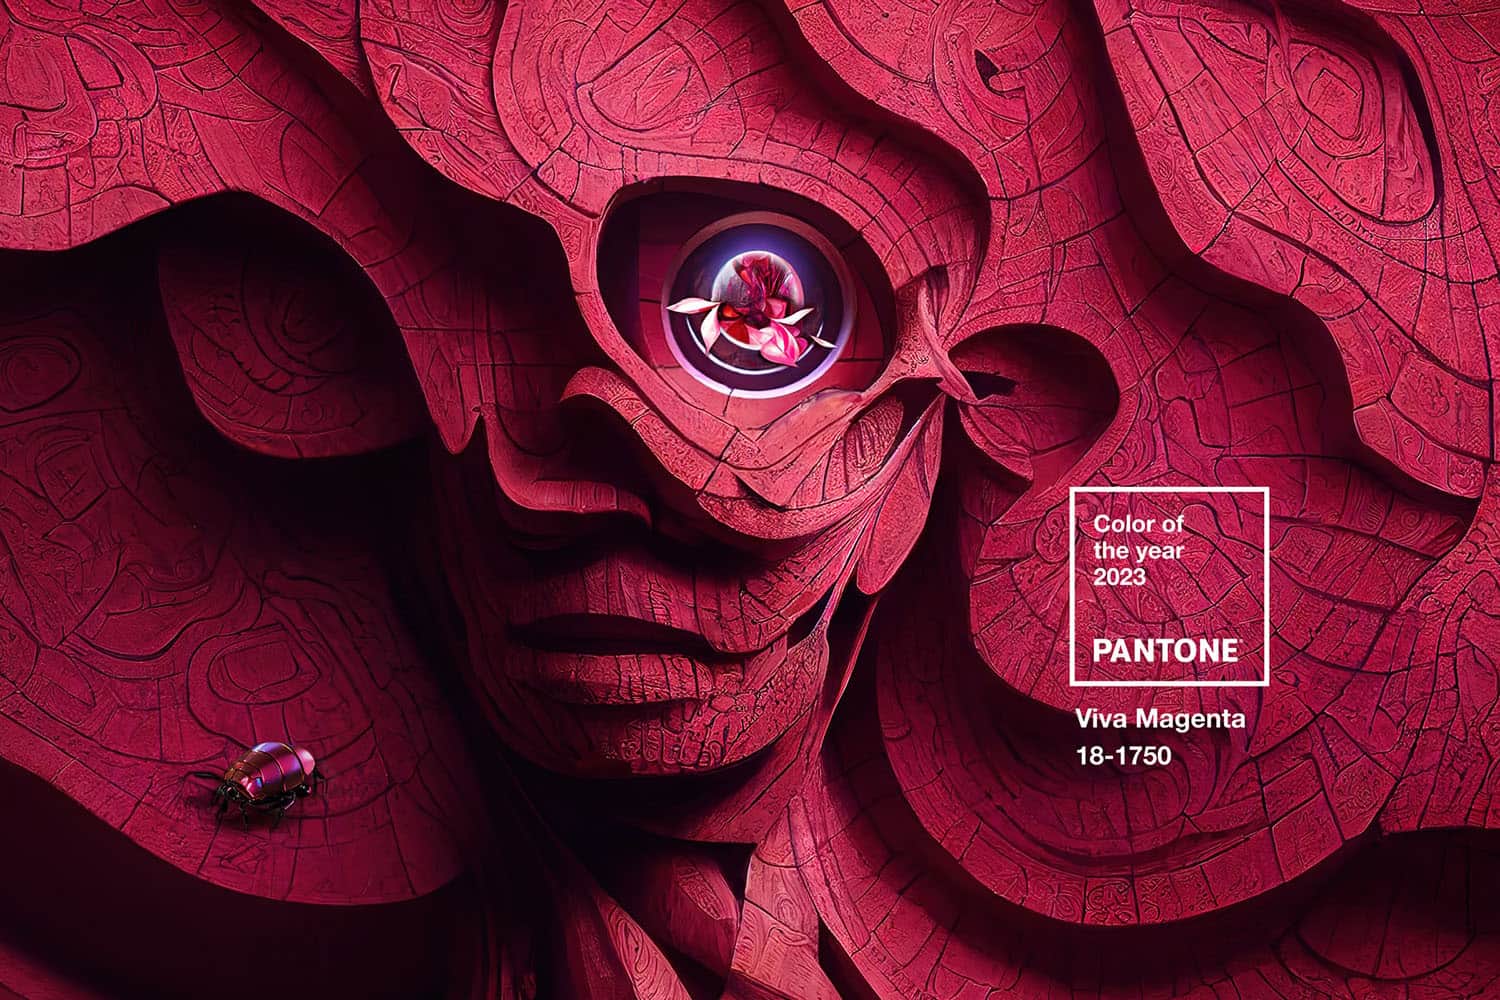 Маникюр в цвете 2023 года по версии Pantone – Viva Magenta